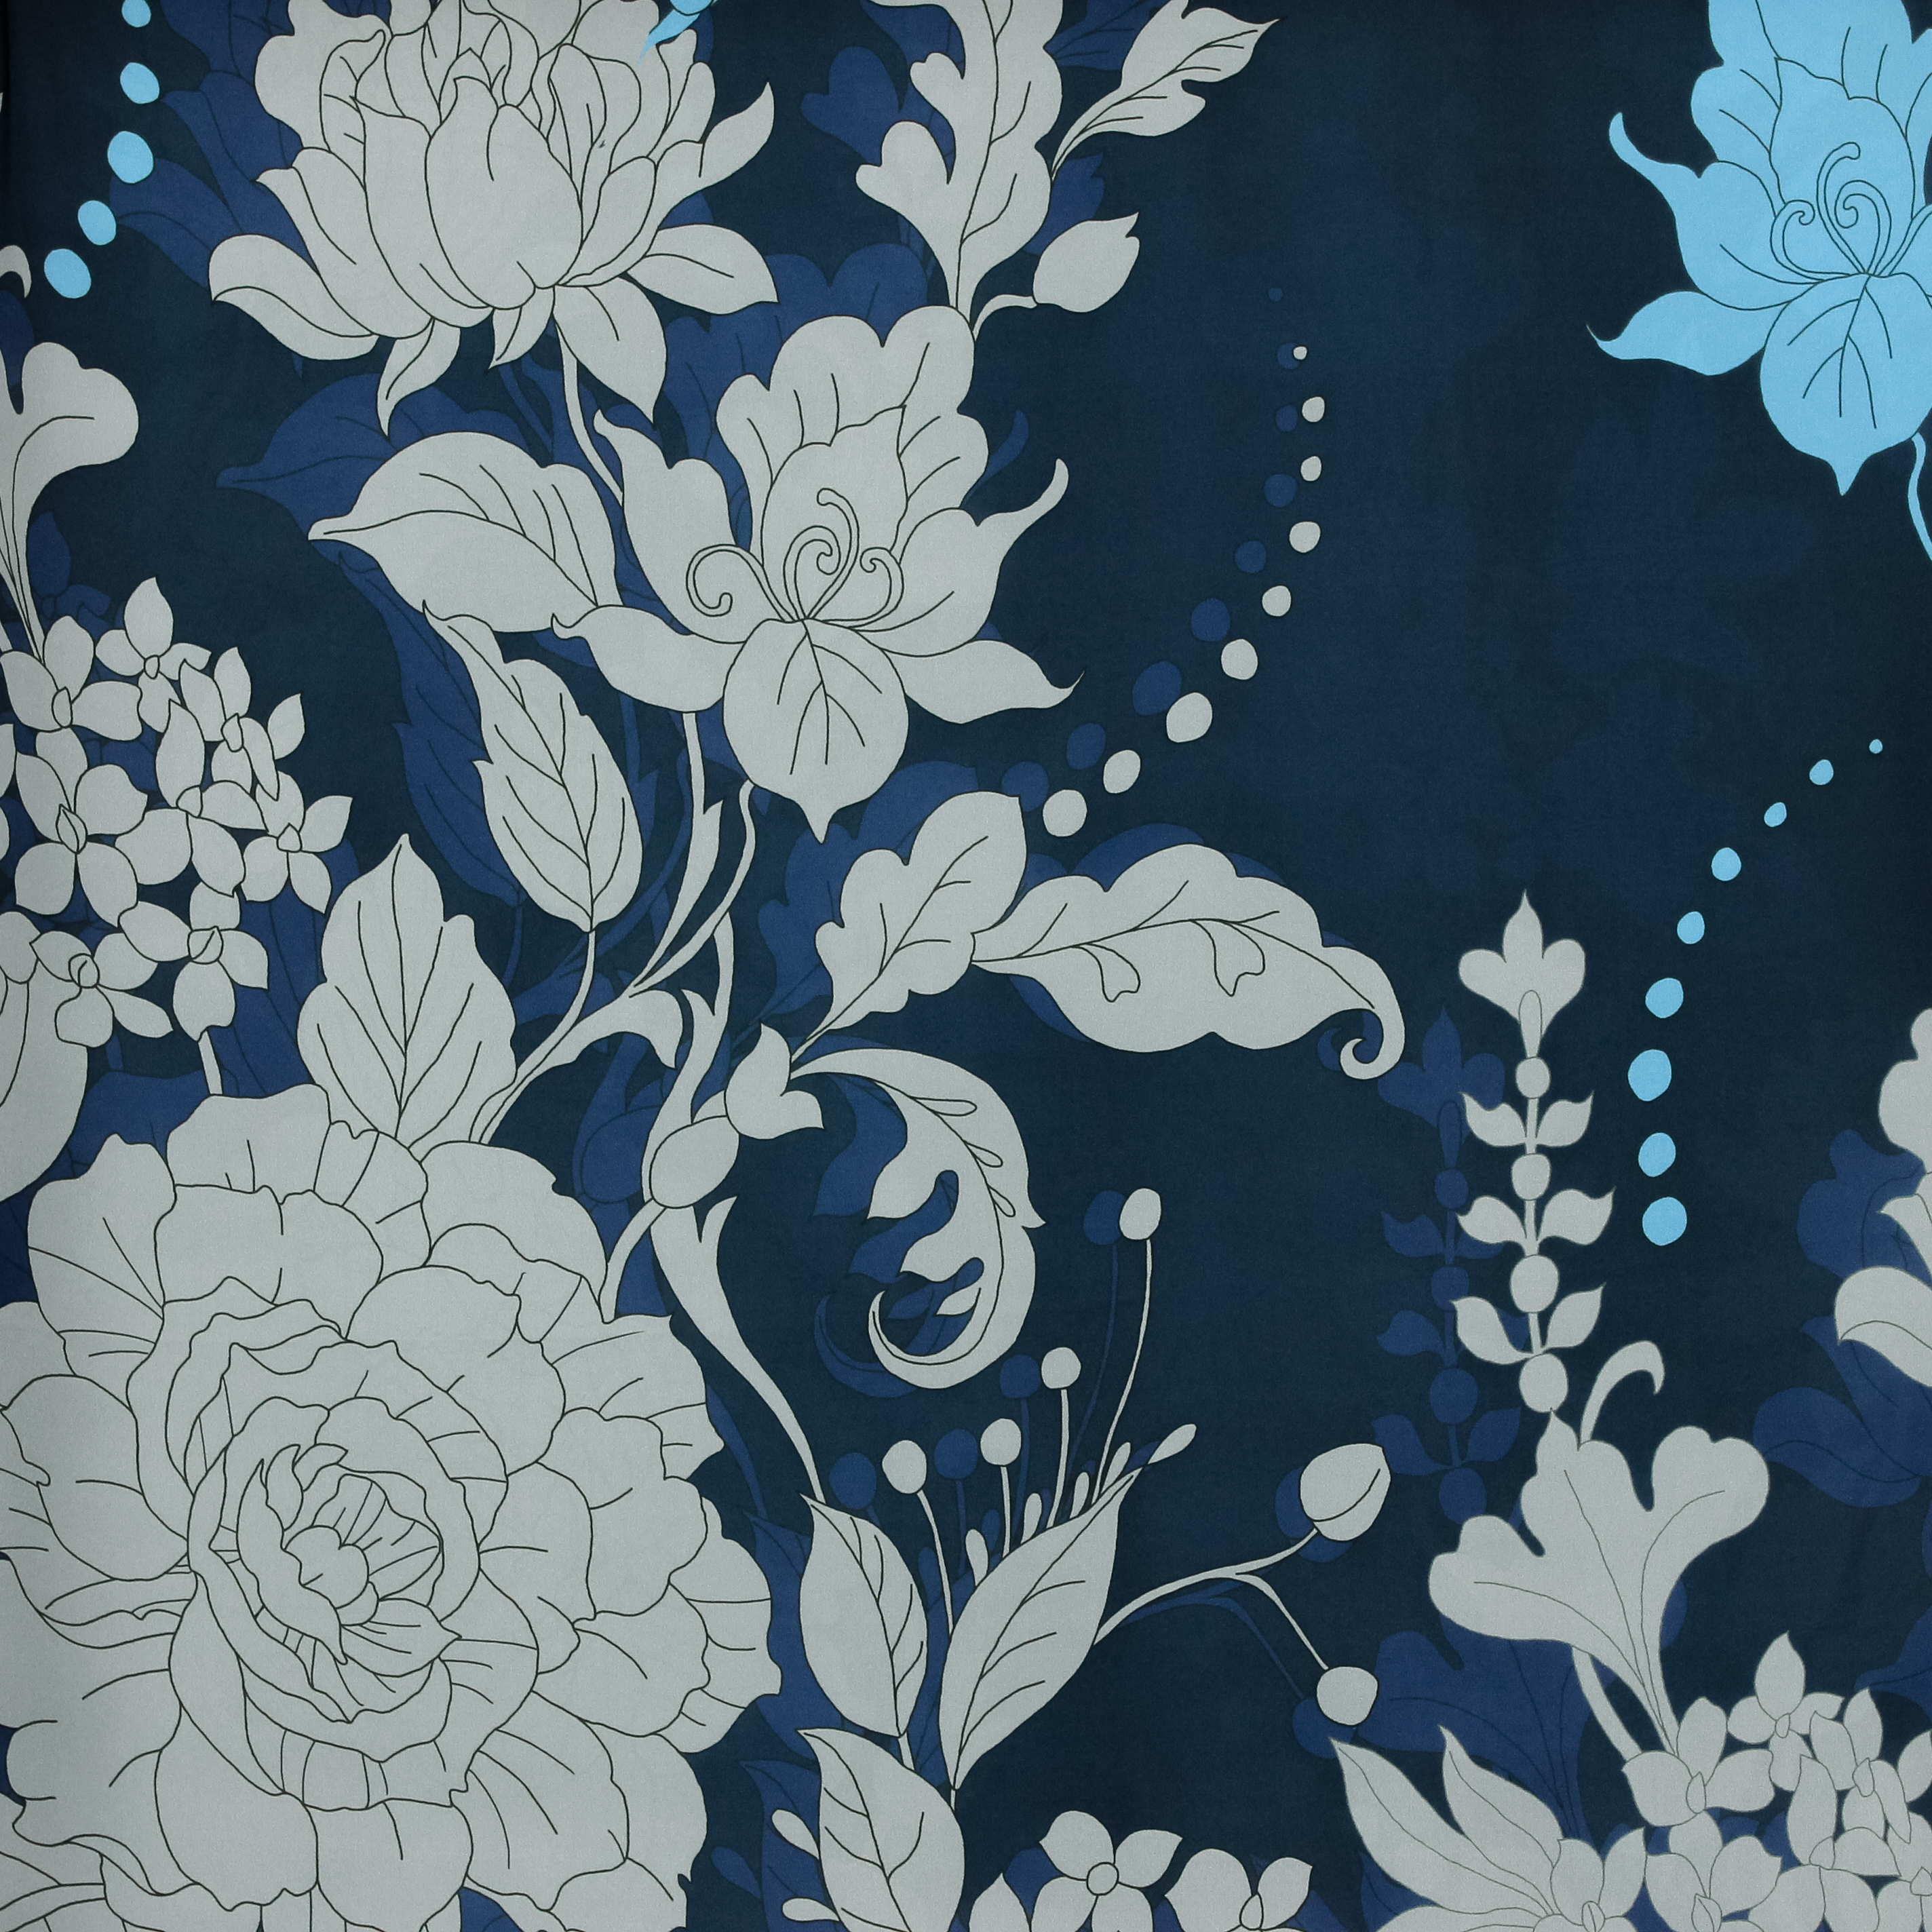 Blauwe soepele gesatineerde polyester met bloemen